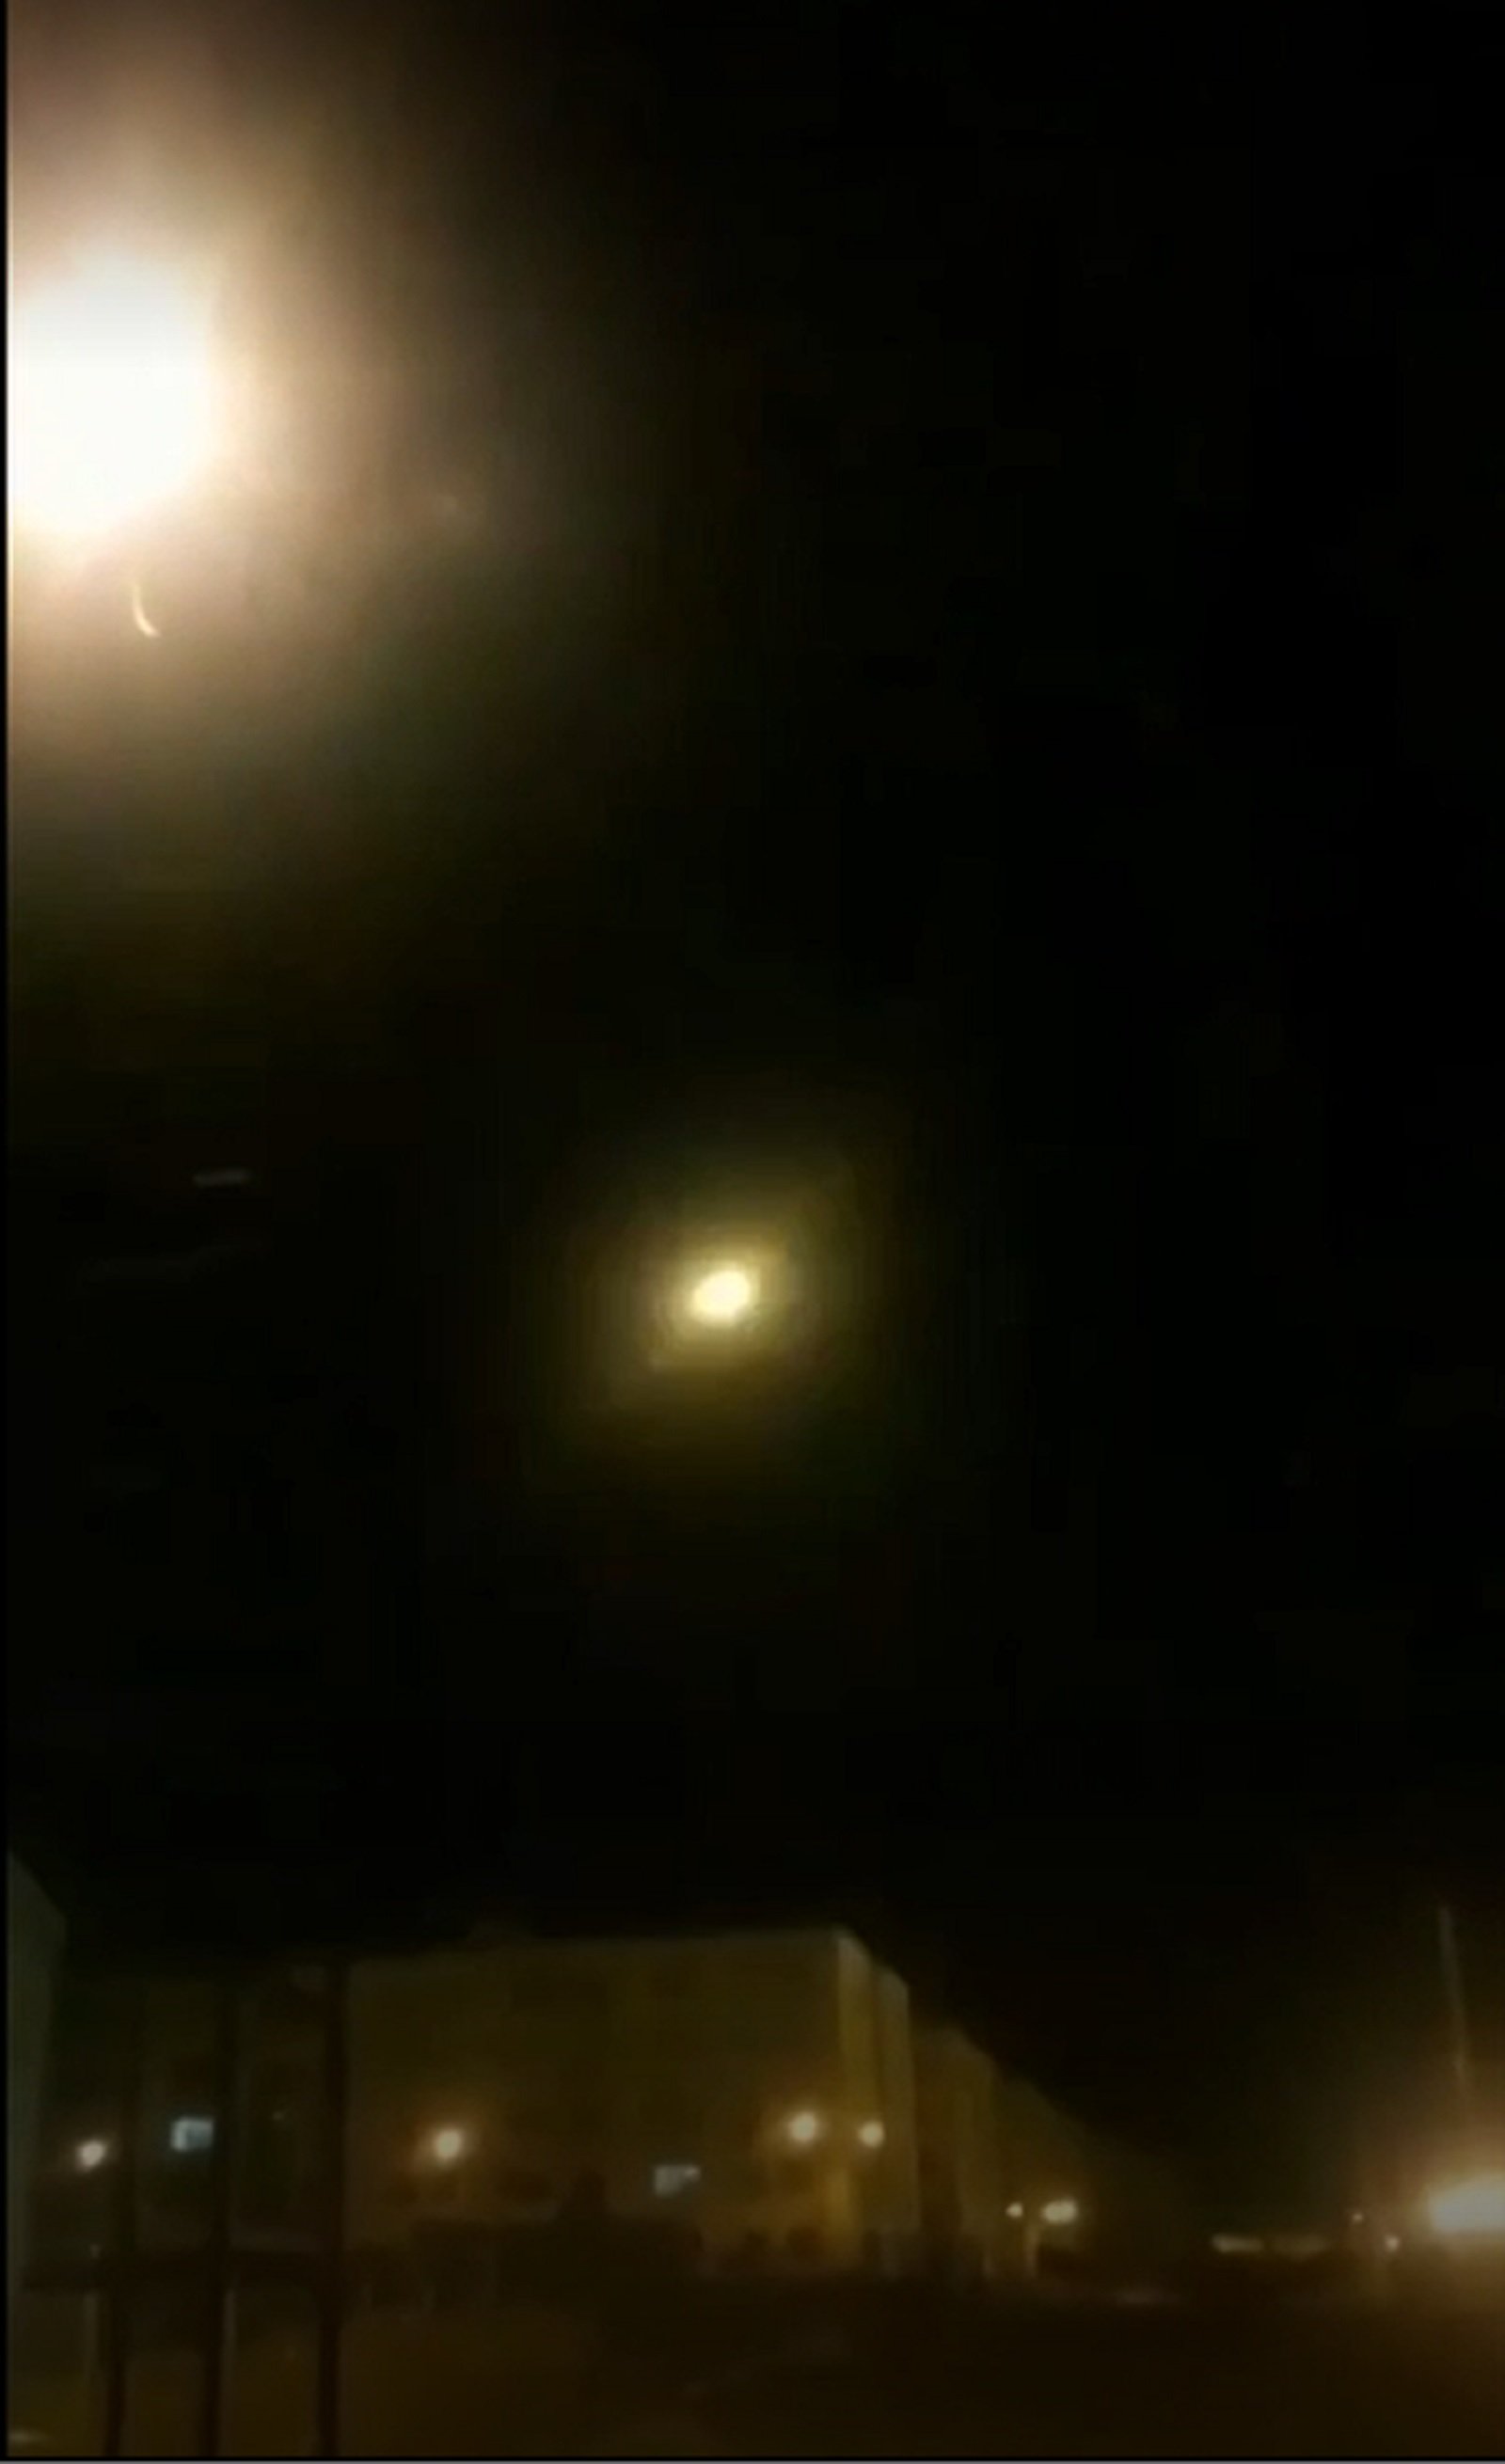 Un vídeo muestra el supuesto impacto de un misil en el avión siniestrado en Irán